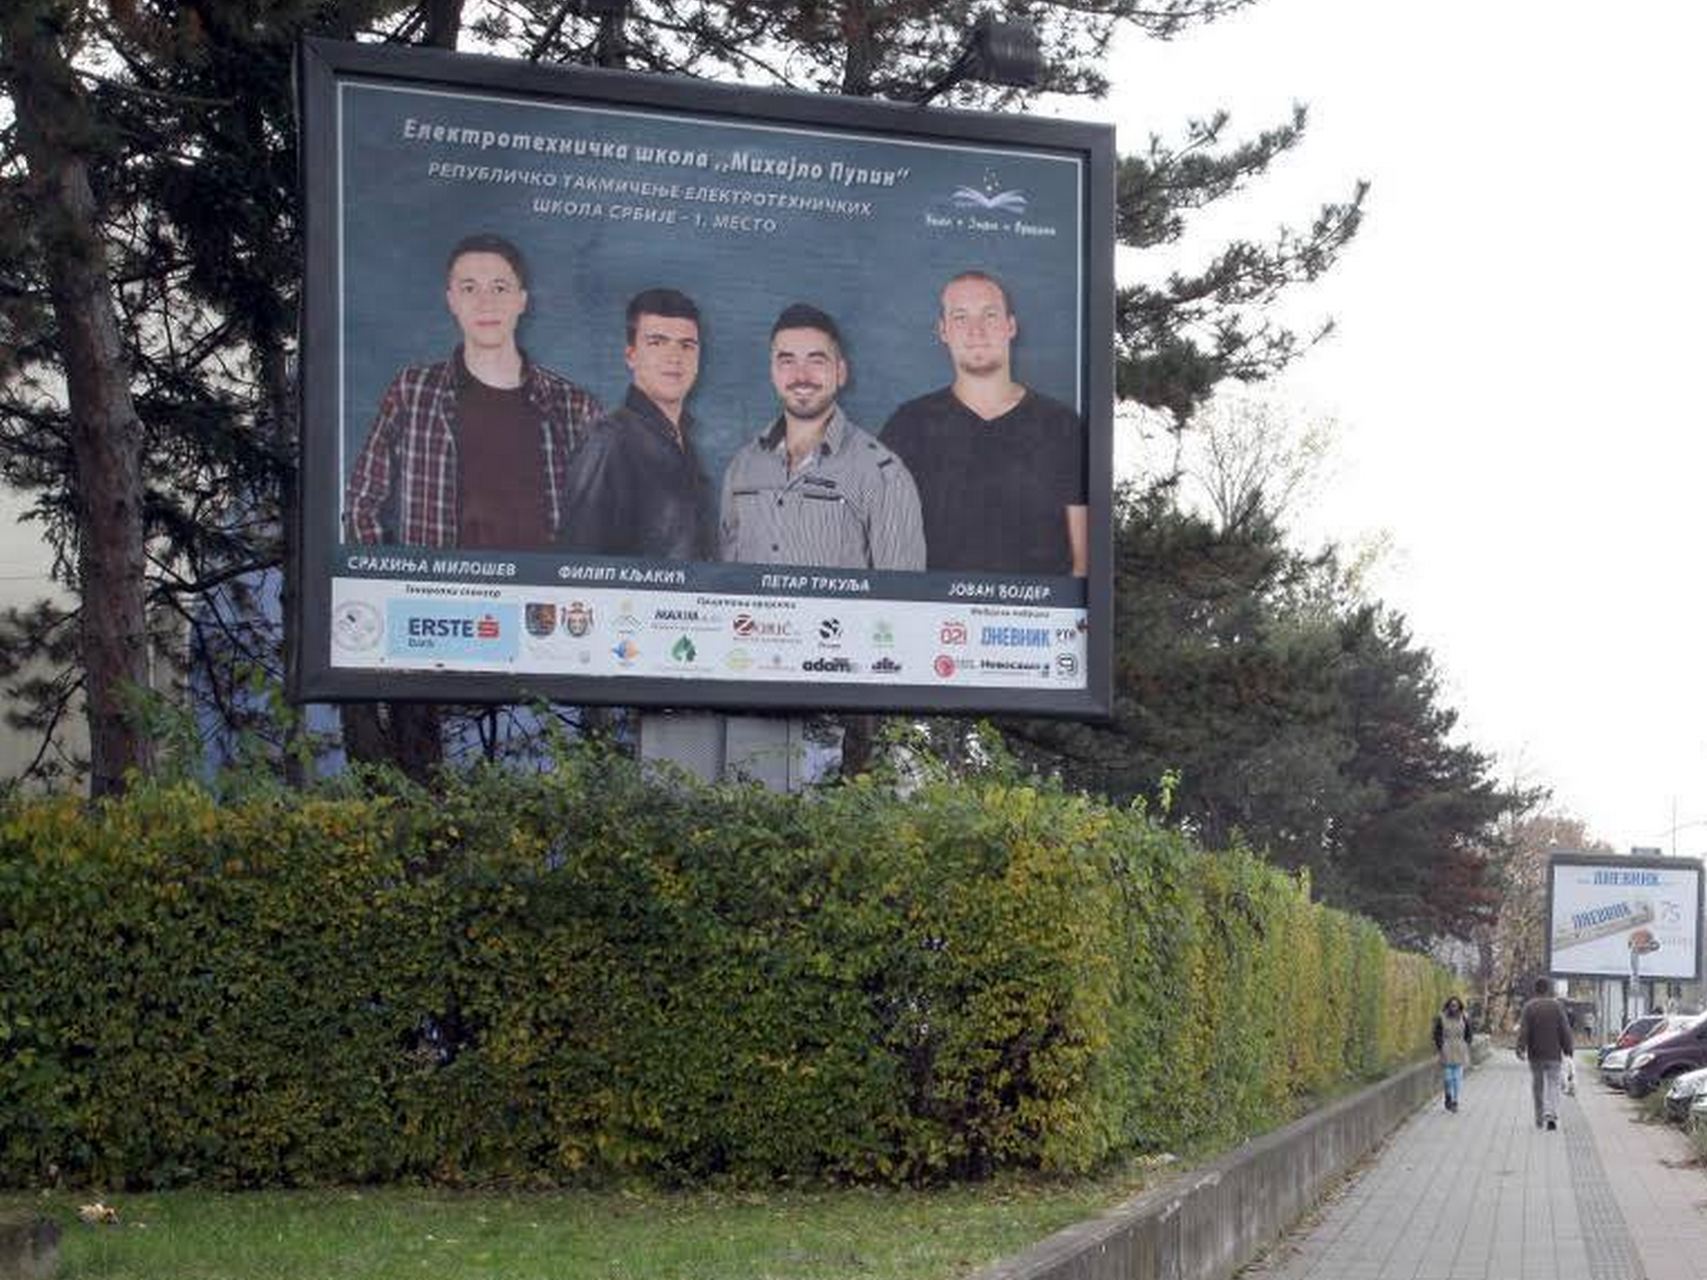 Najuspešniji novosadski učenici na bilbordima širom grada